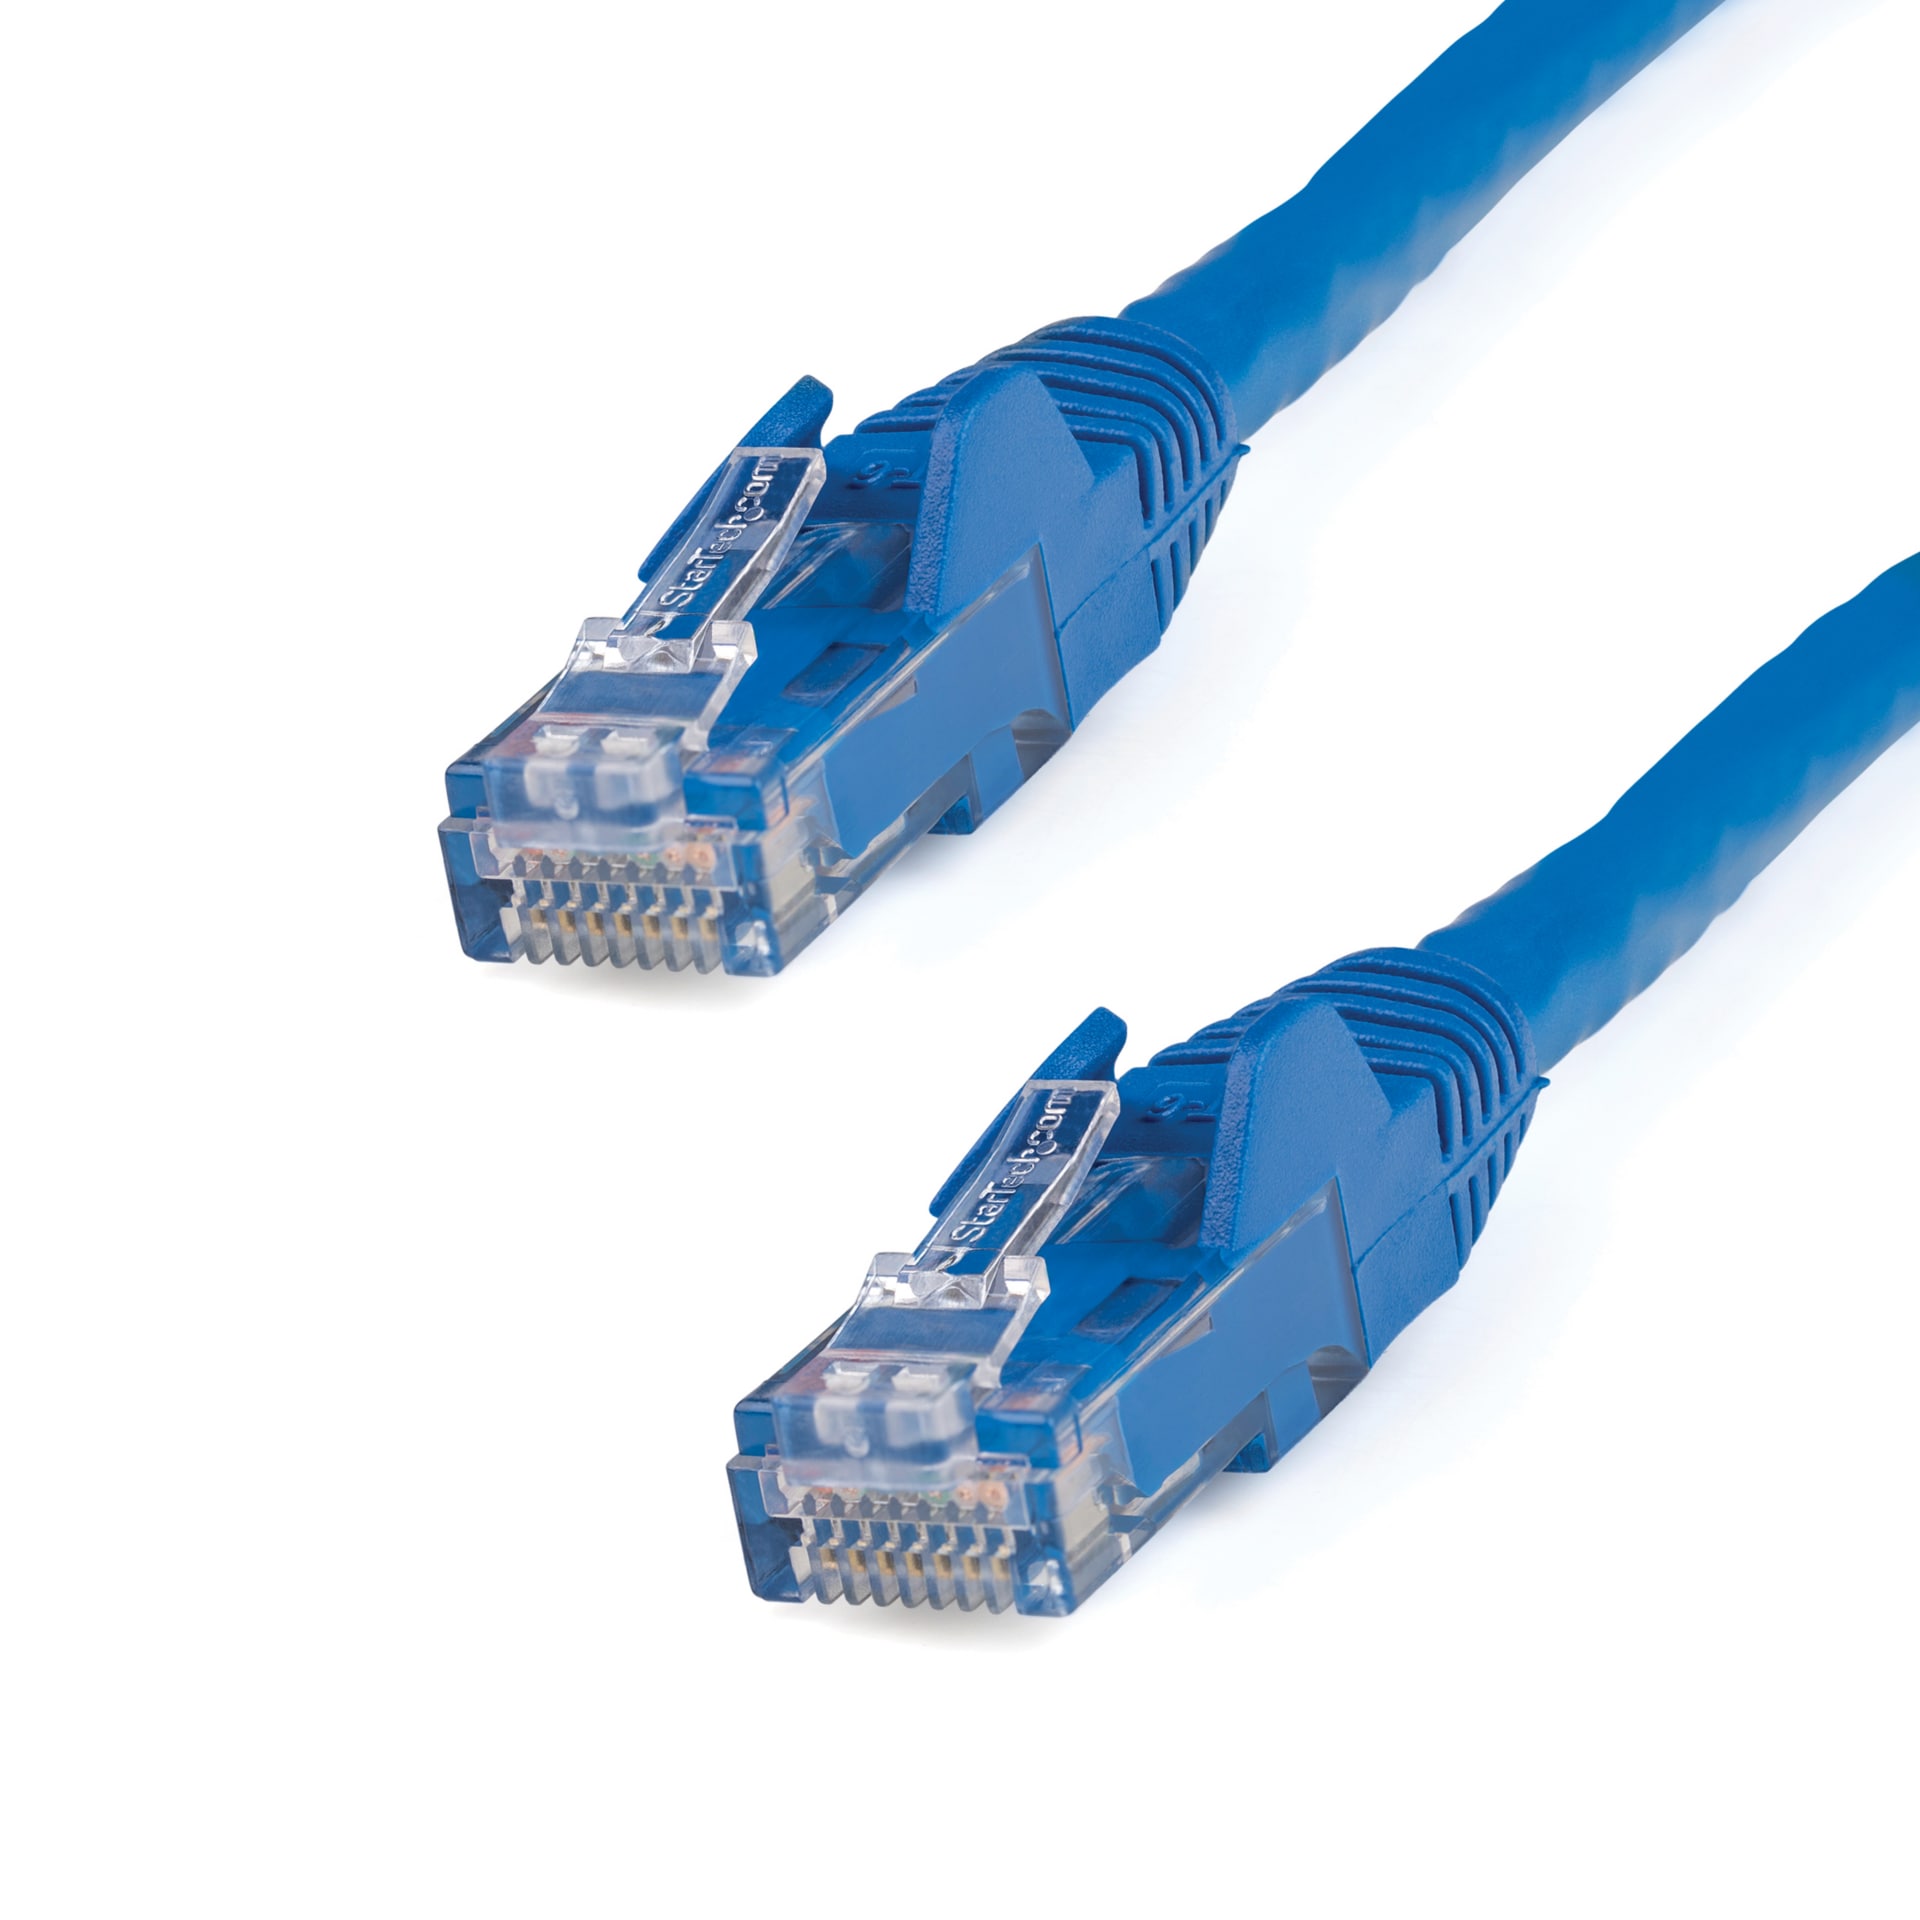 Ugreen — Câble Ethernet Cat 6 A, Câble Réseau 10 Gbps, 4 Paires